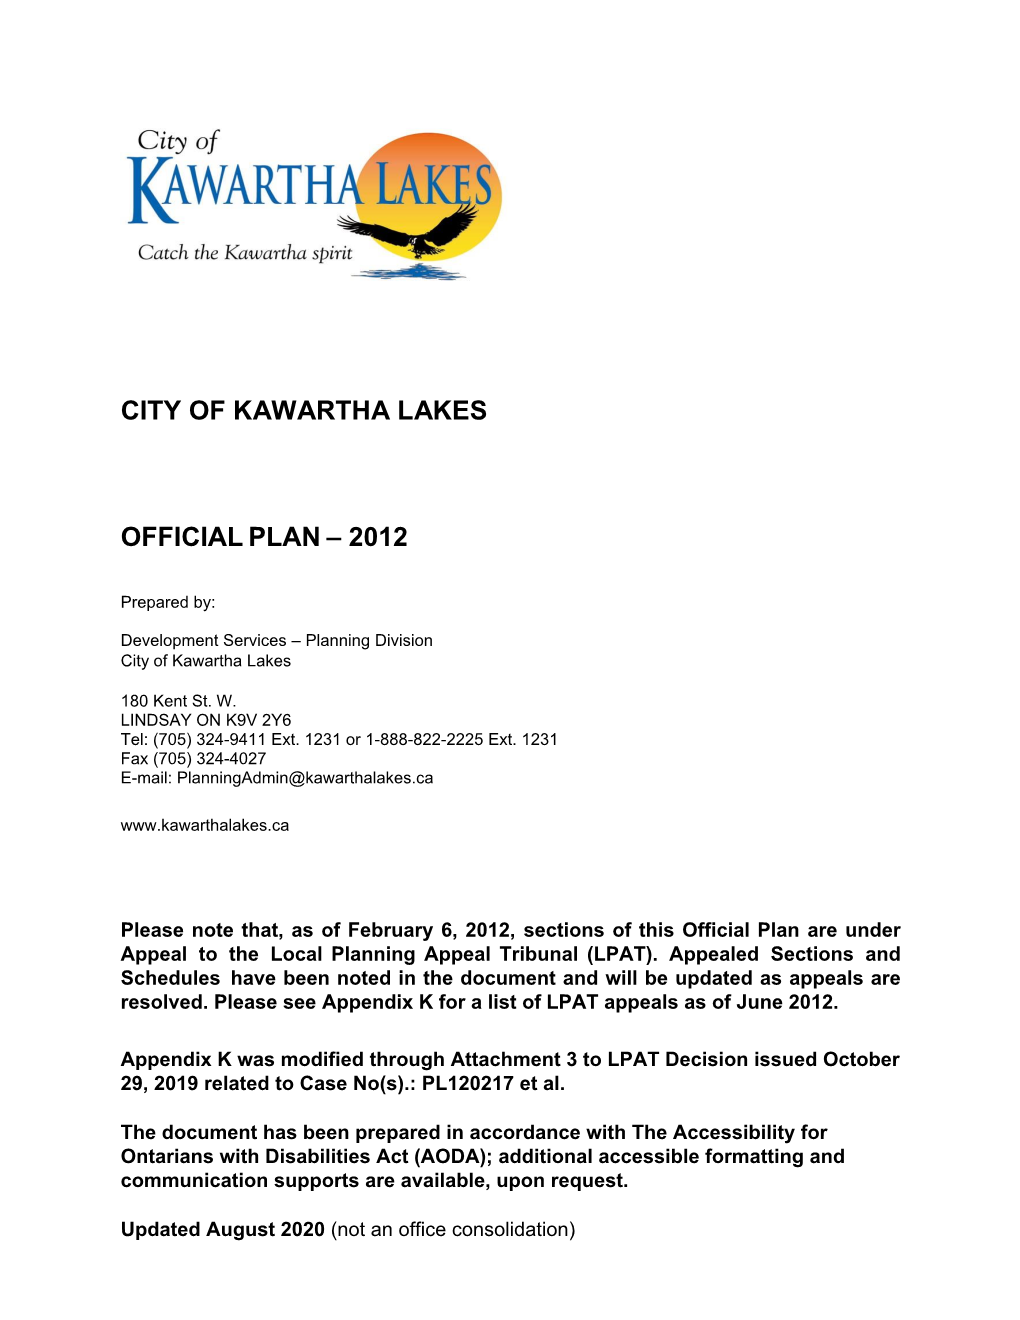 City of Kawartha Lakes Official Plan – 2012